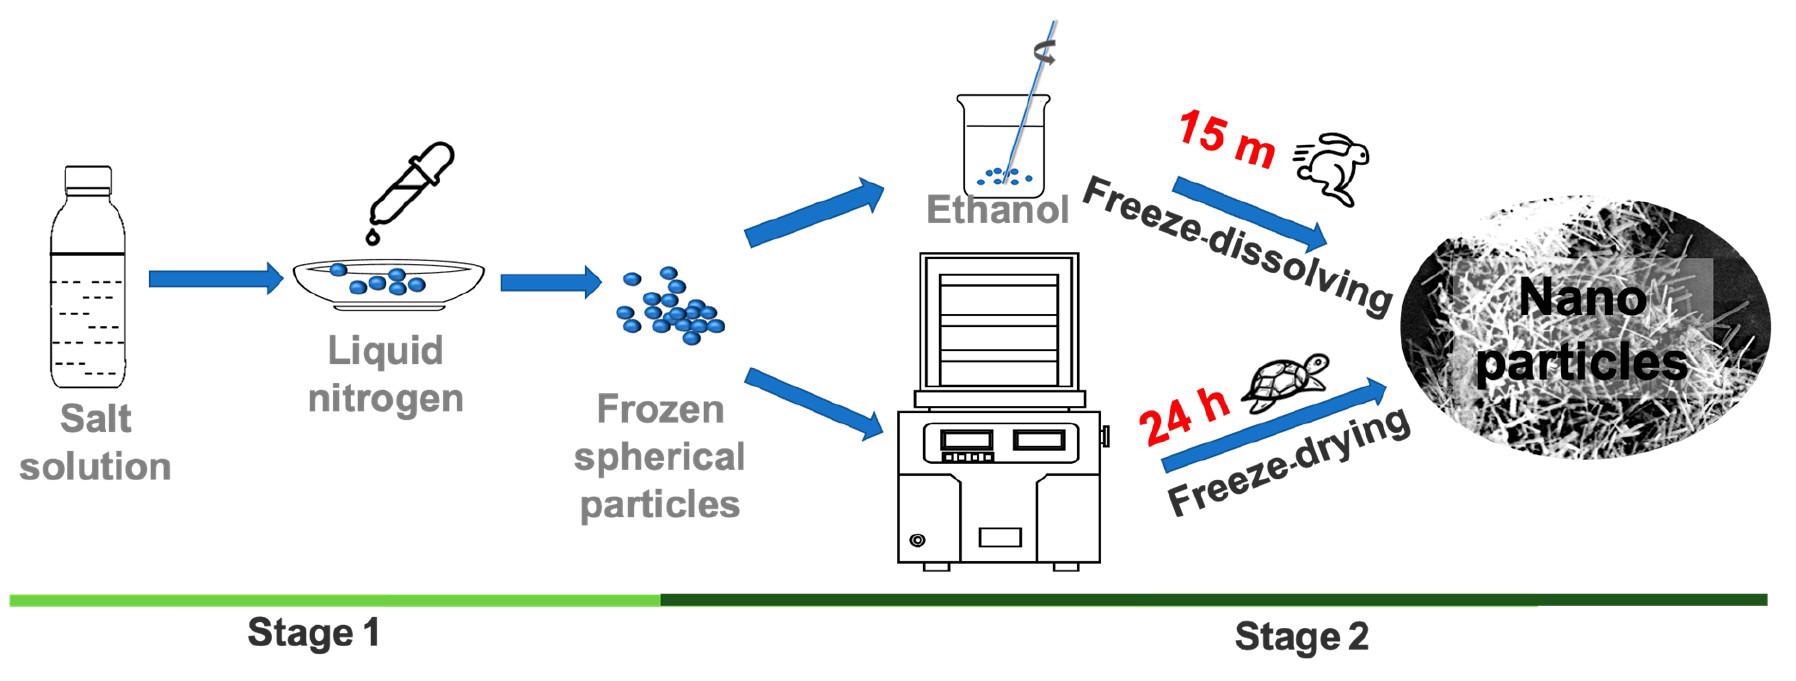 制造纳米颗粒和超细粉末的绿色方法